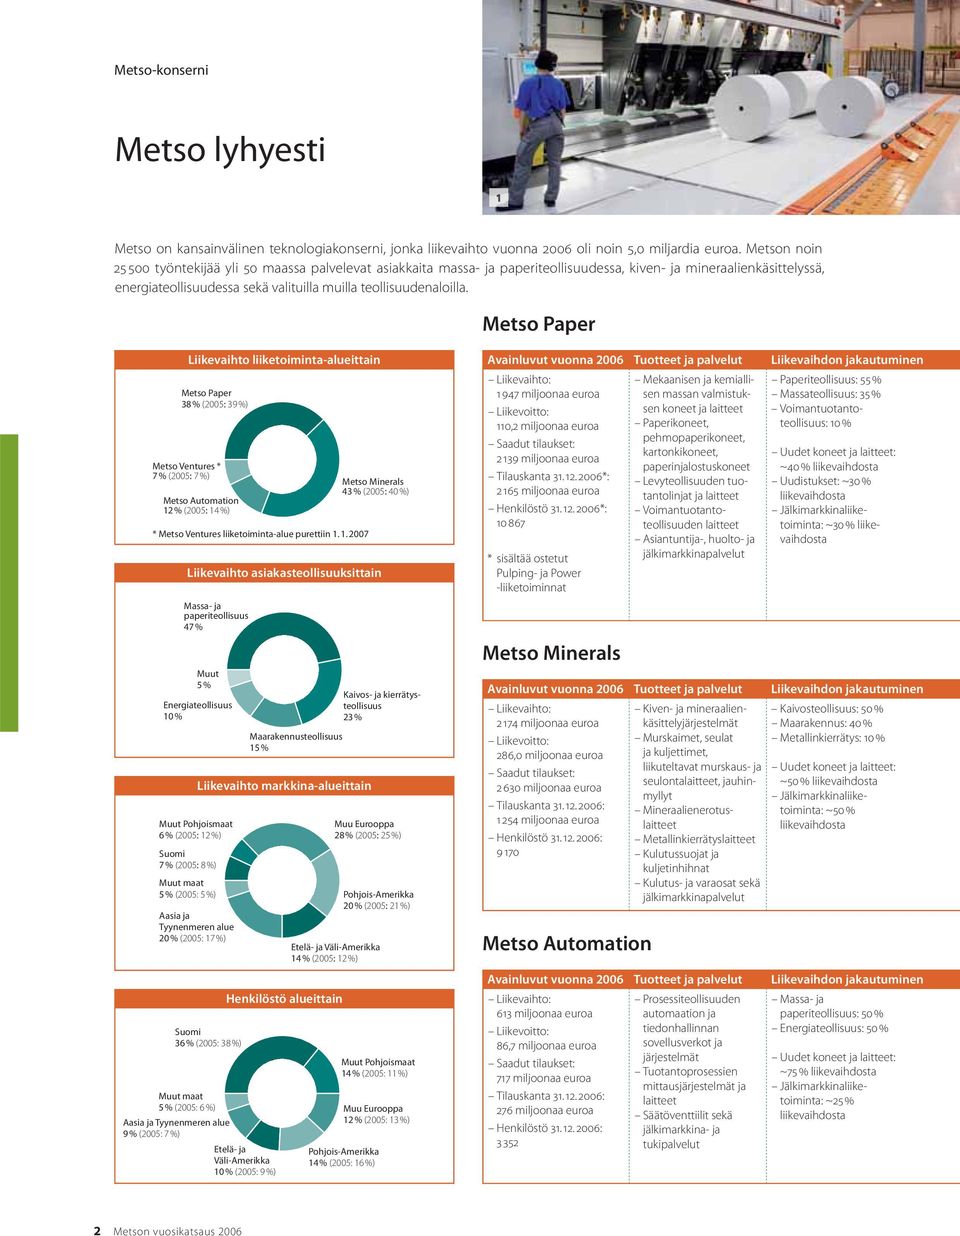 Metso Paper Liikevaihto liiketoiminta-alueittain Metso Paper 38 % (2005: 39 %) Metso Ventures * 7 % (2005: 7 %) Metso Automation 12